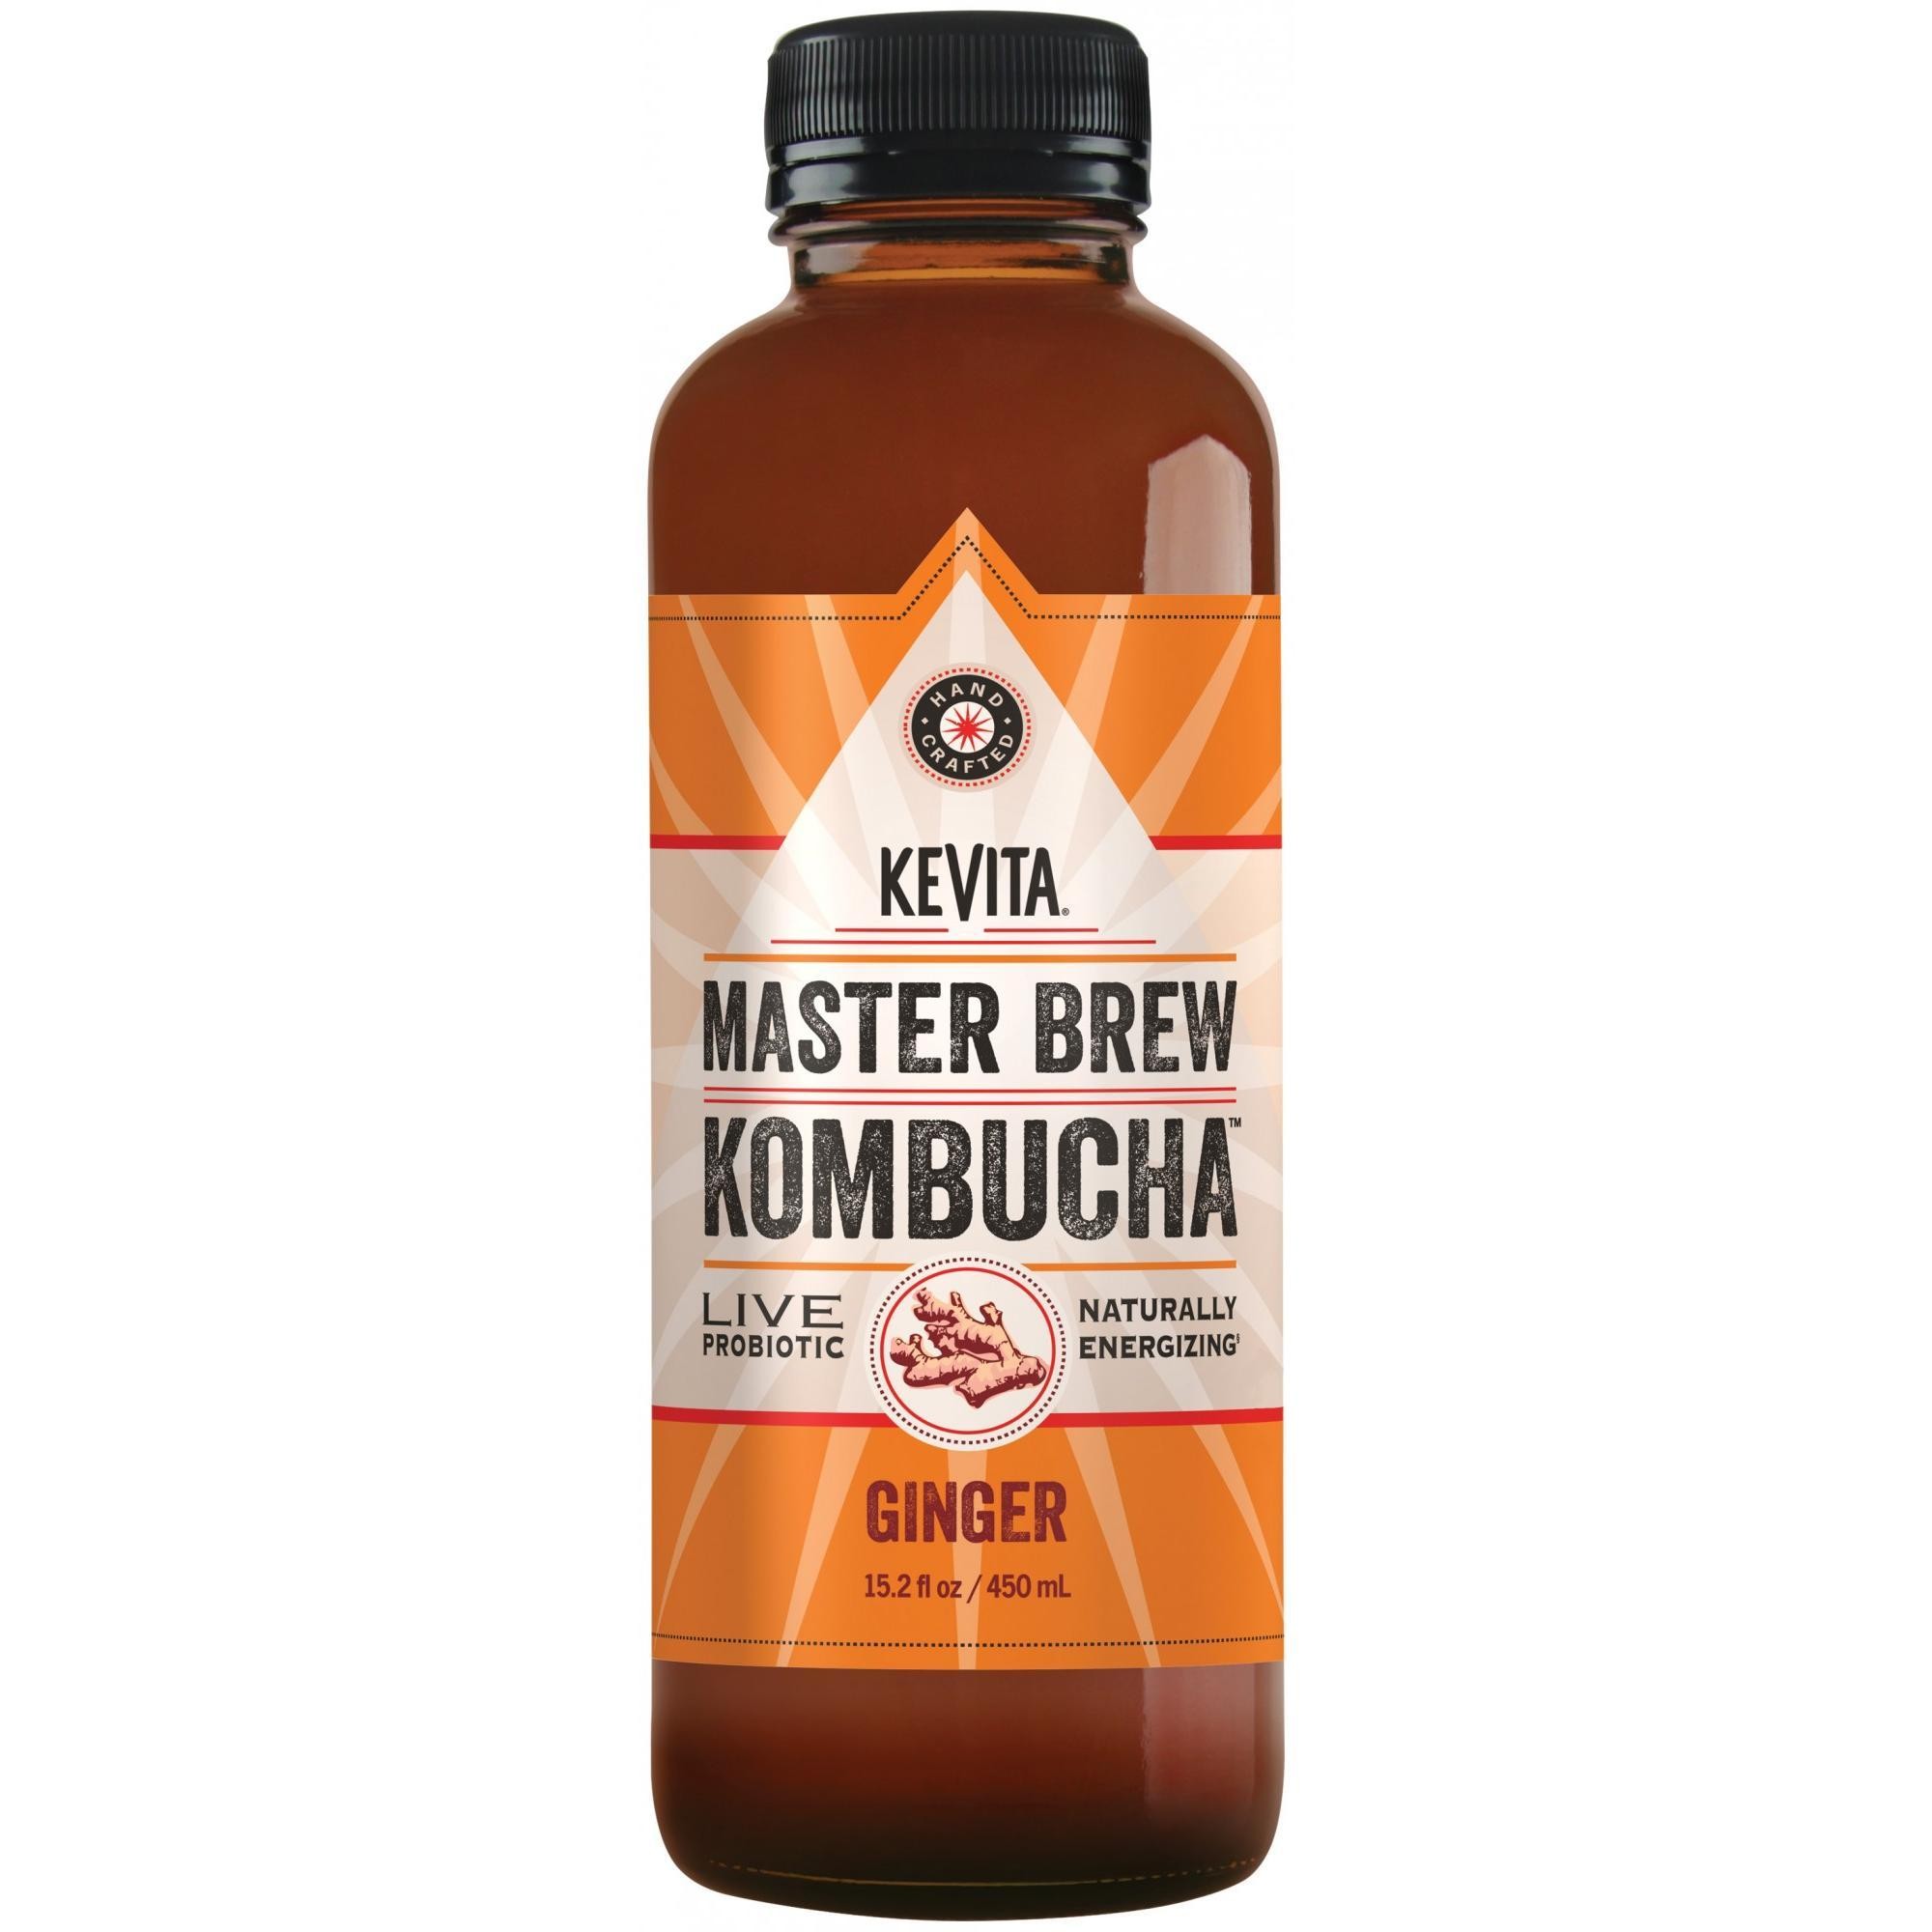 Ginger Master Brew Kombucha